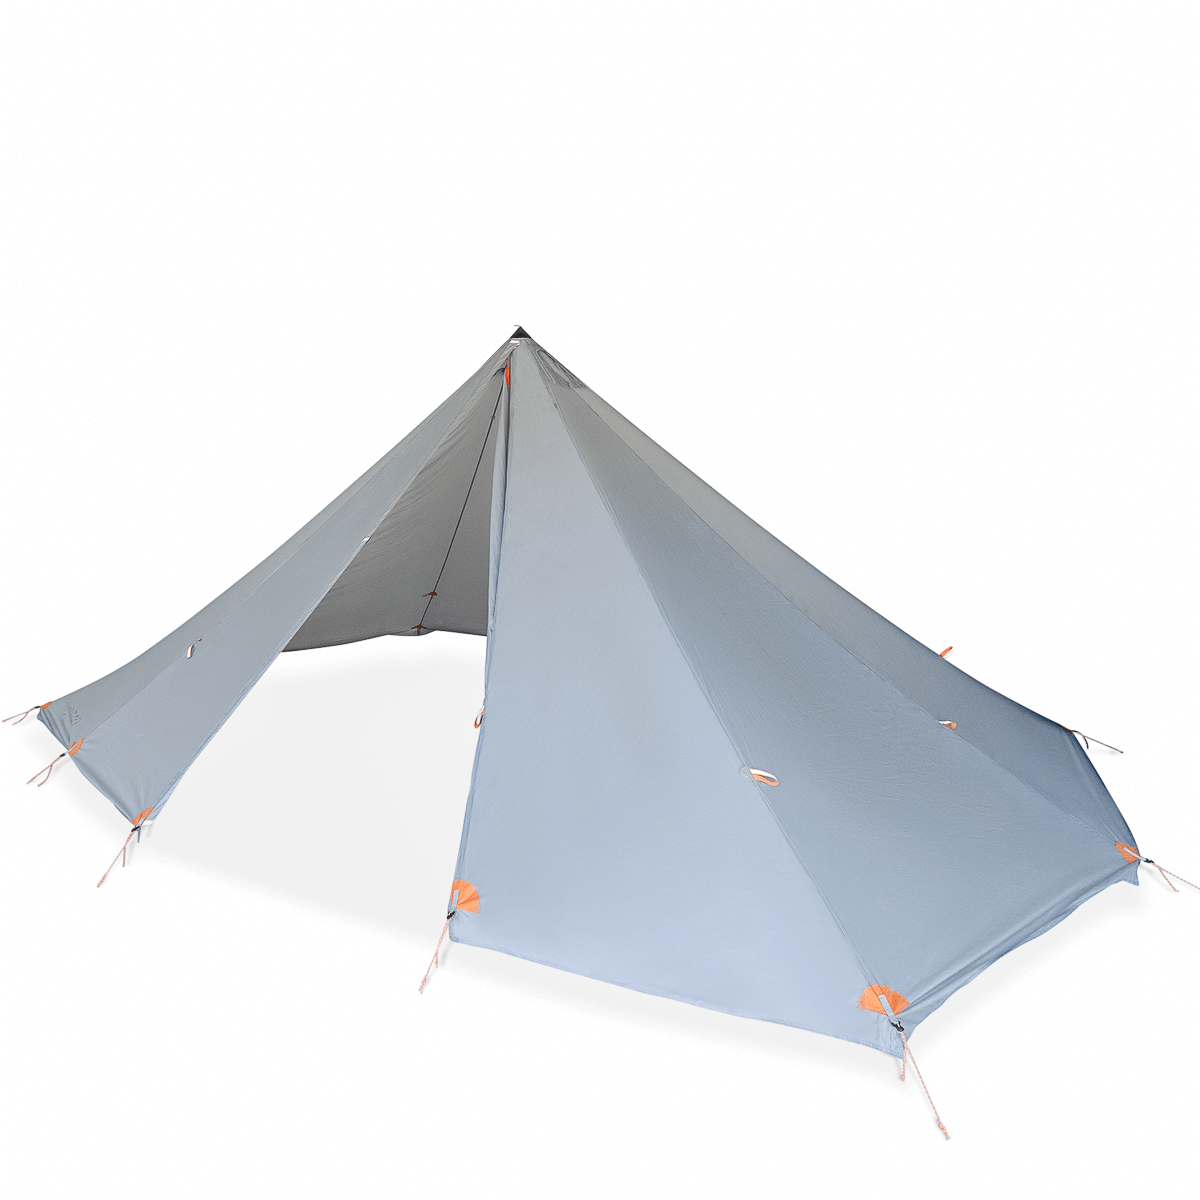 Argali Selway 6P Tent